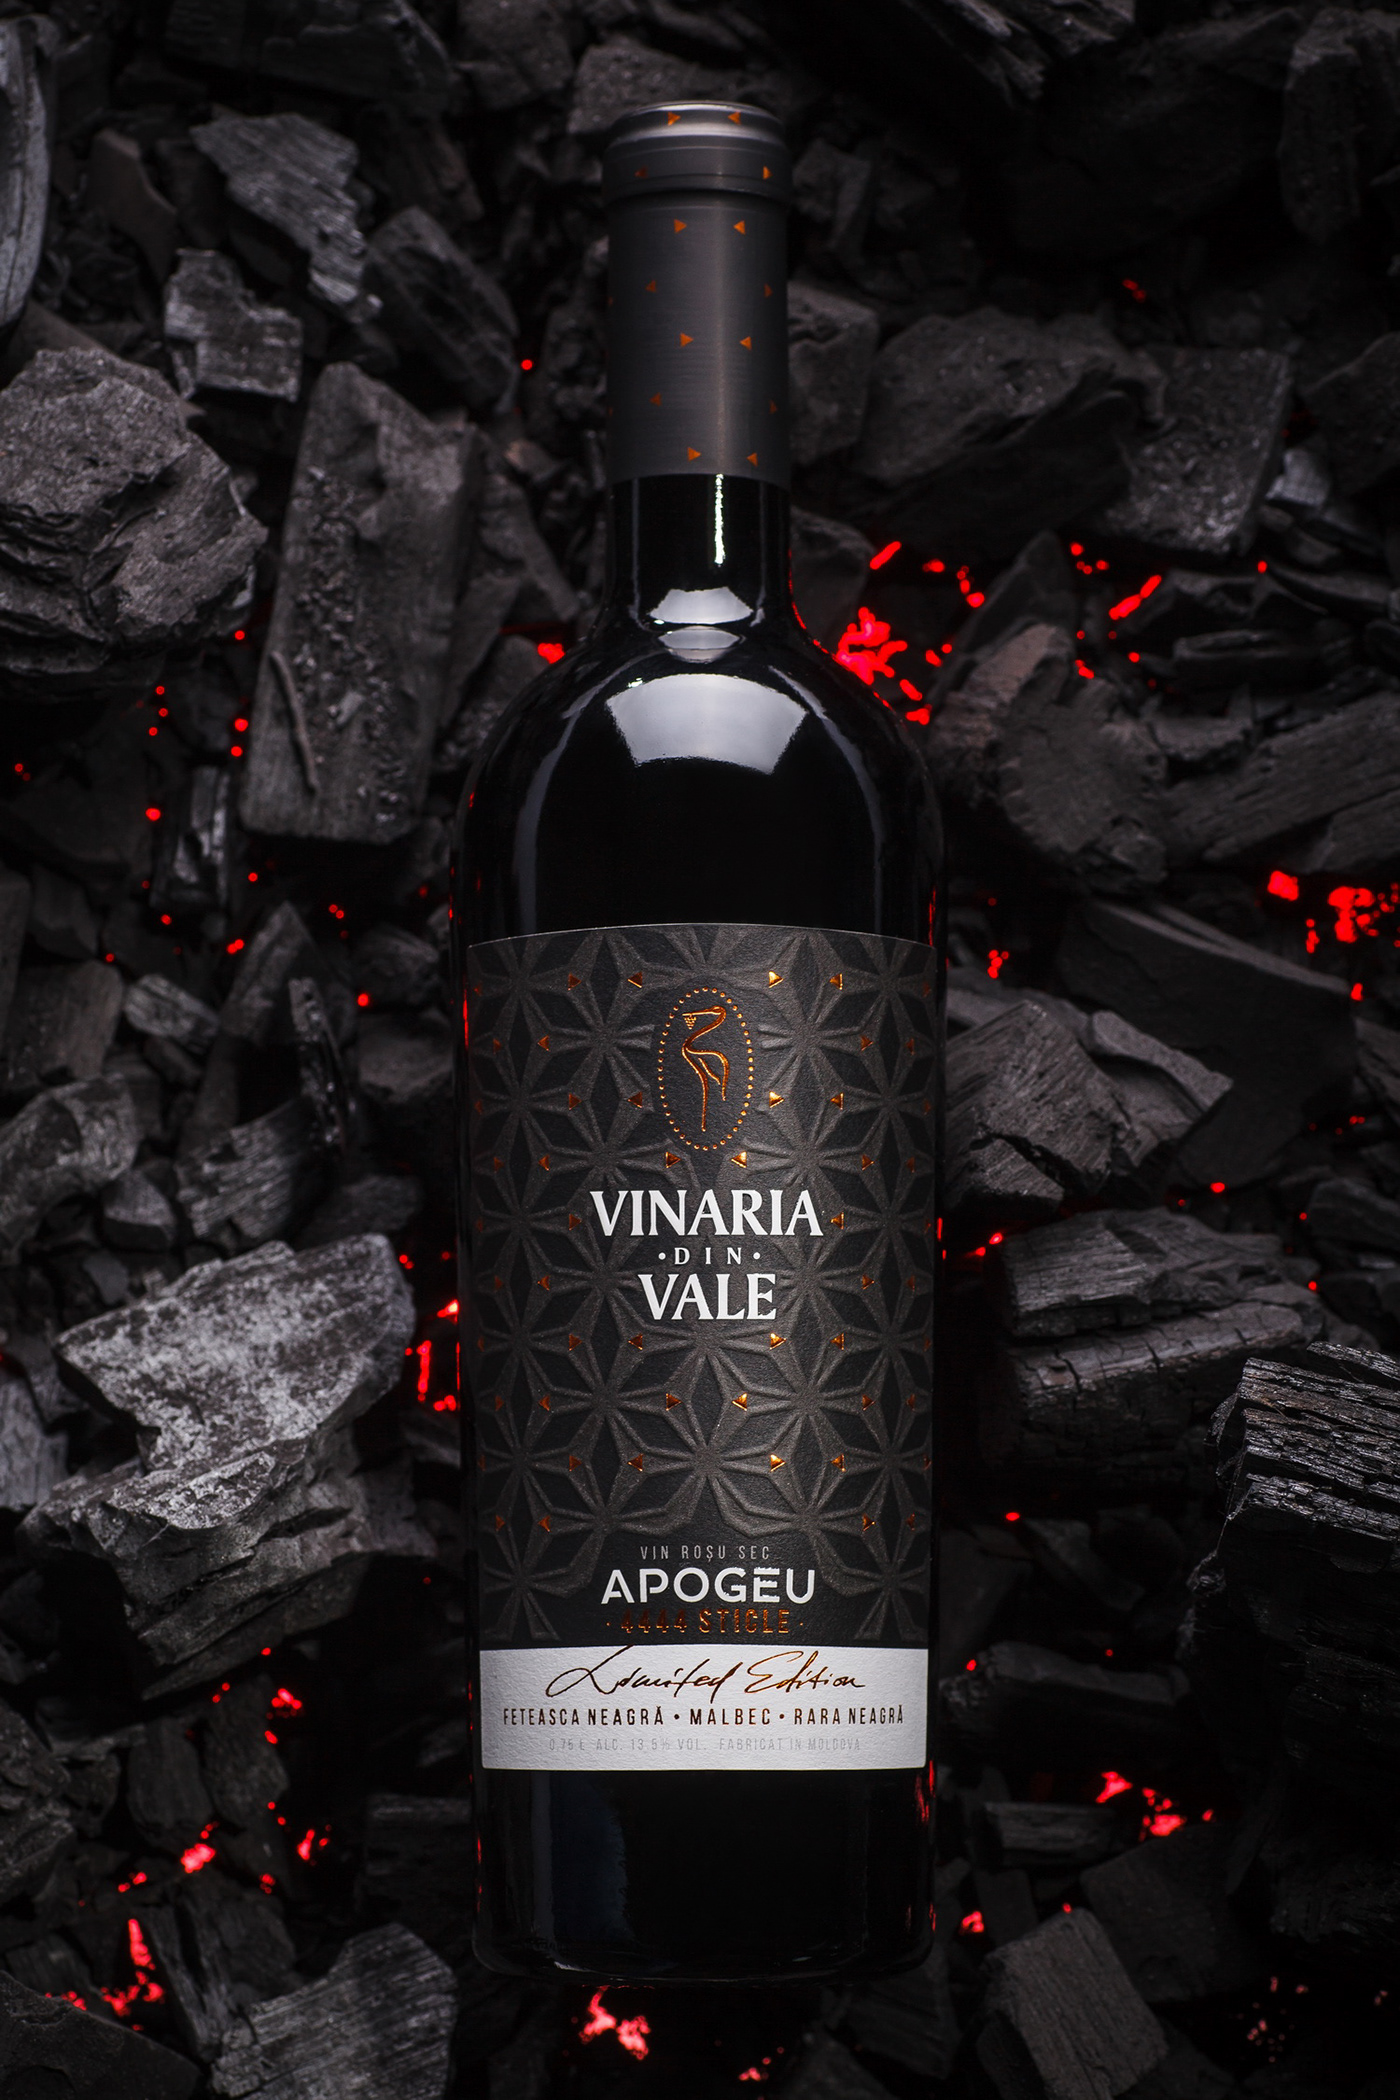 43oz vinaria din vale Apogeu wine label Moldova premium wine label design Packaging packaging design design studio